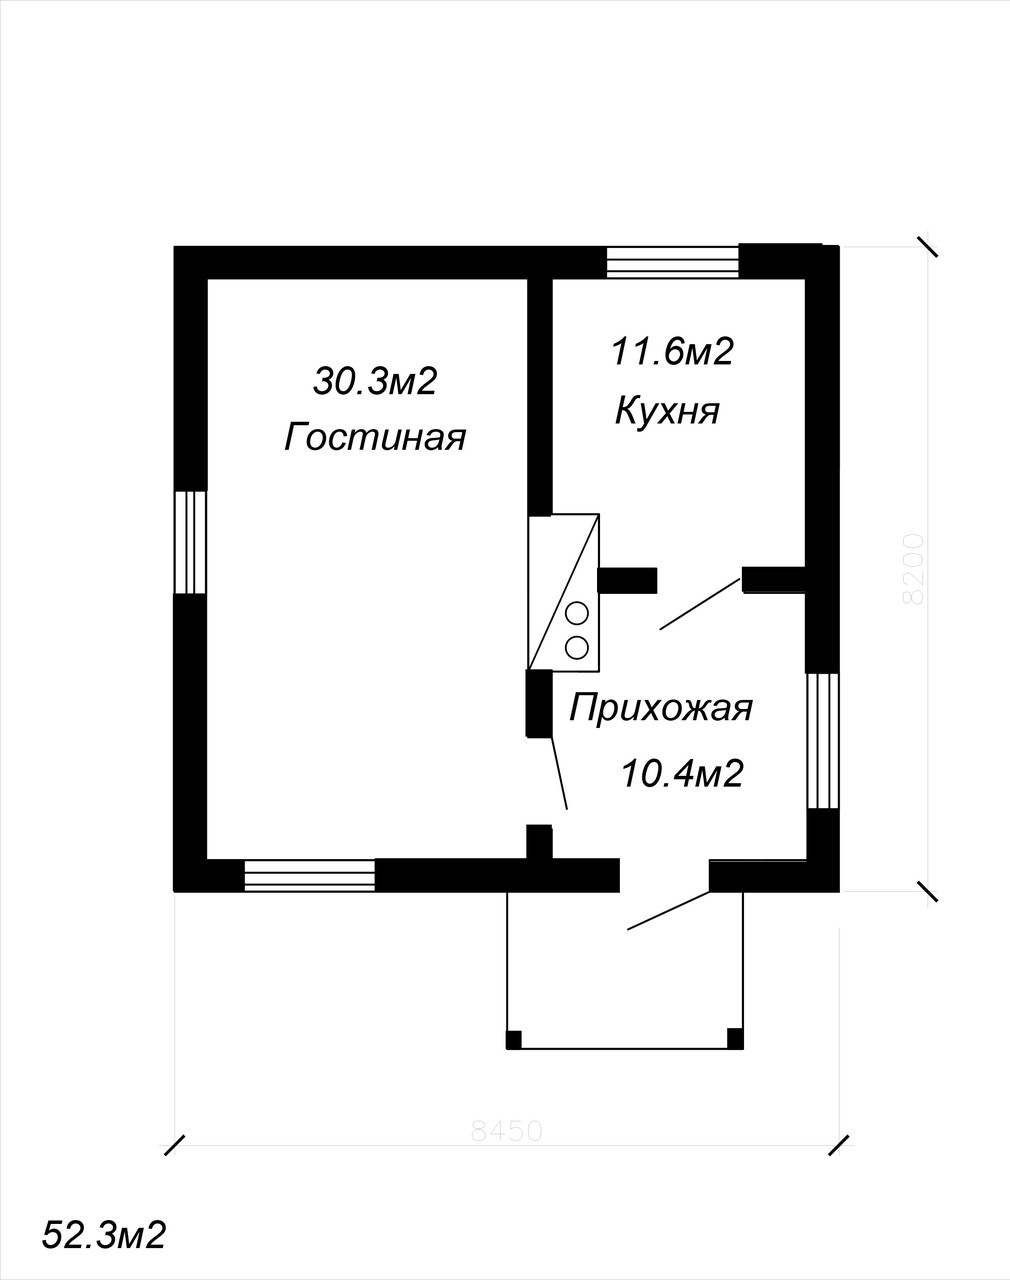 Проект одноэтажного жилого дома 52.3м2